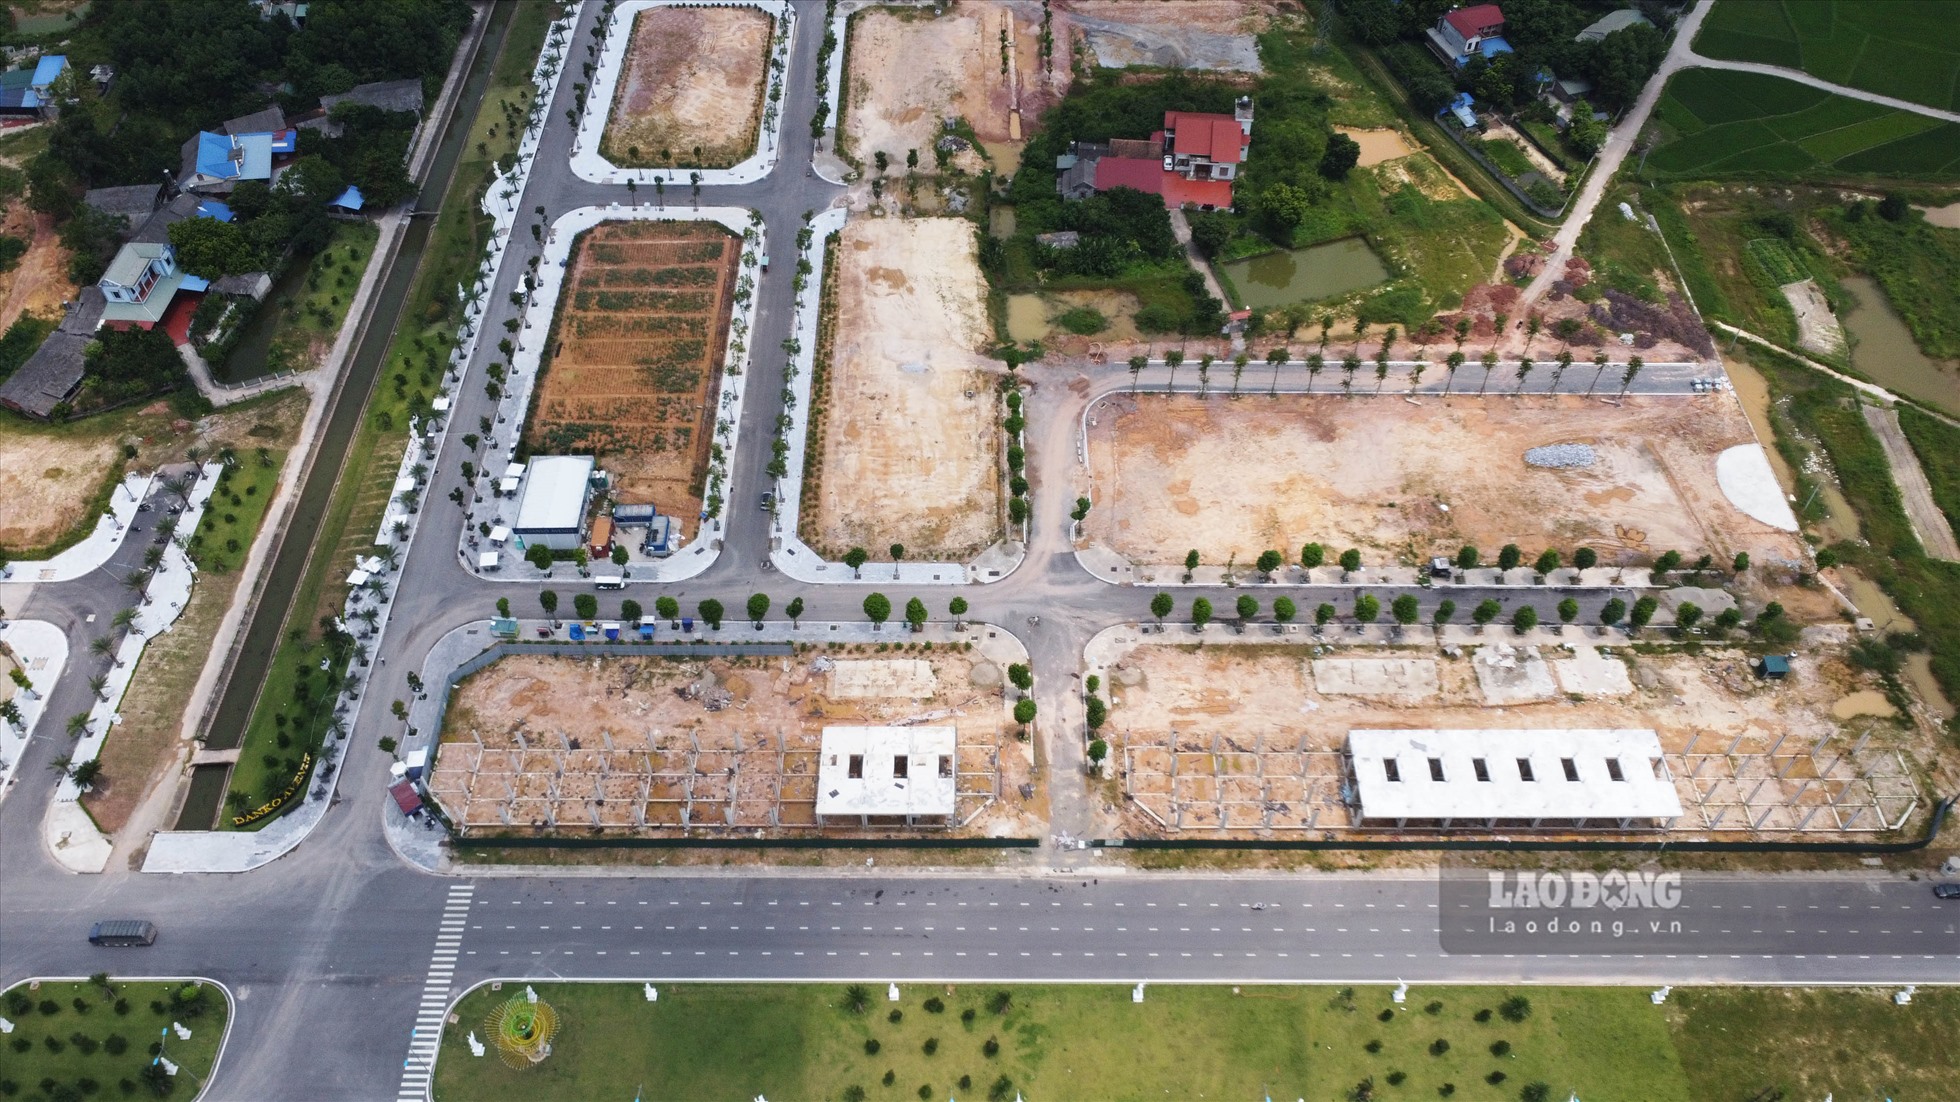 Được khởi công từ đầu năm 2020 nhưng đến nay Dự án Khu nhà ở phường Bách Quang (Danko Avenue) TP. Sông Công vẫn như một đại công trường ngổn ngang. Rất nhiều vị trí được quy hoạch phân lô xây nhà liền kê, tái định cư vẫn rõ hình hài.